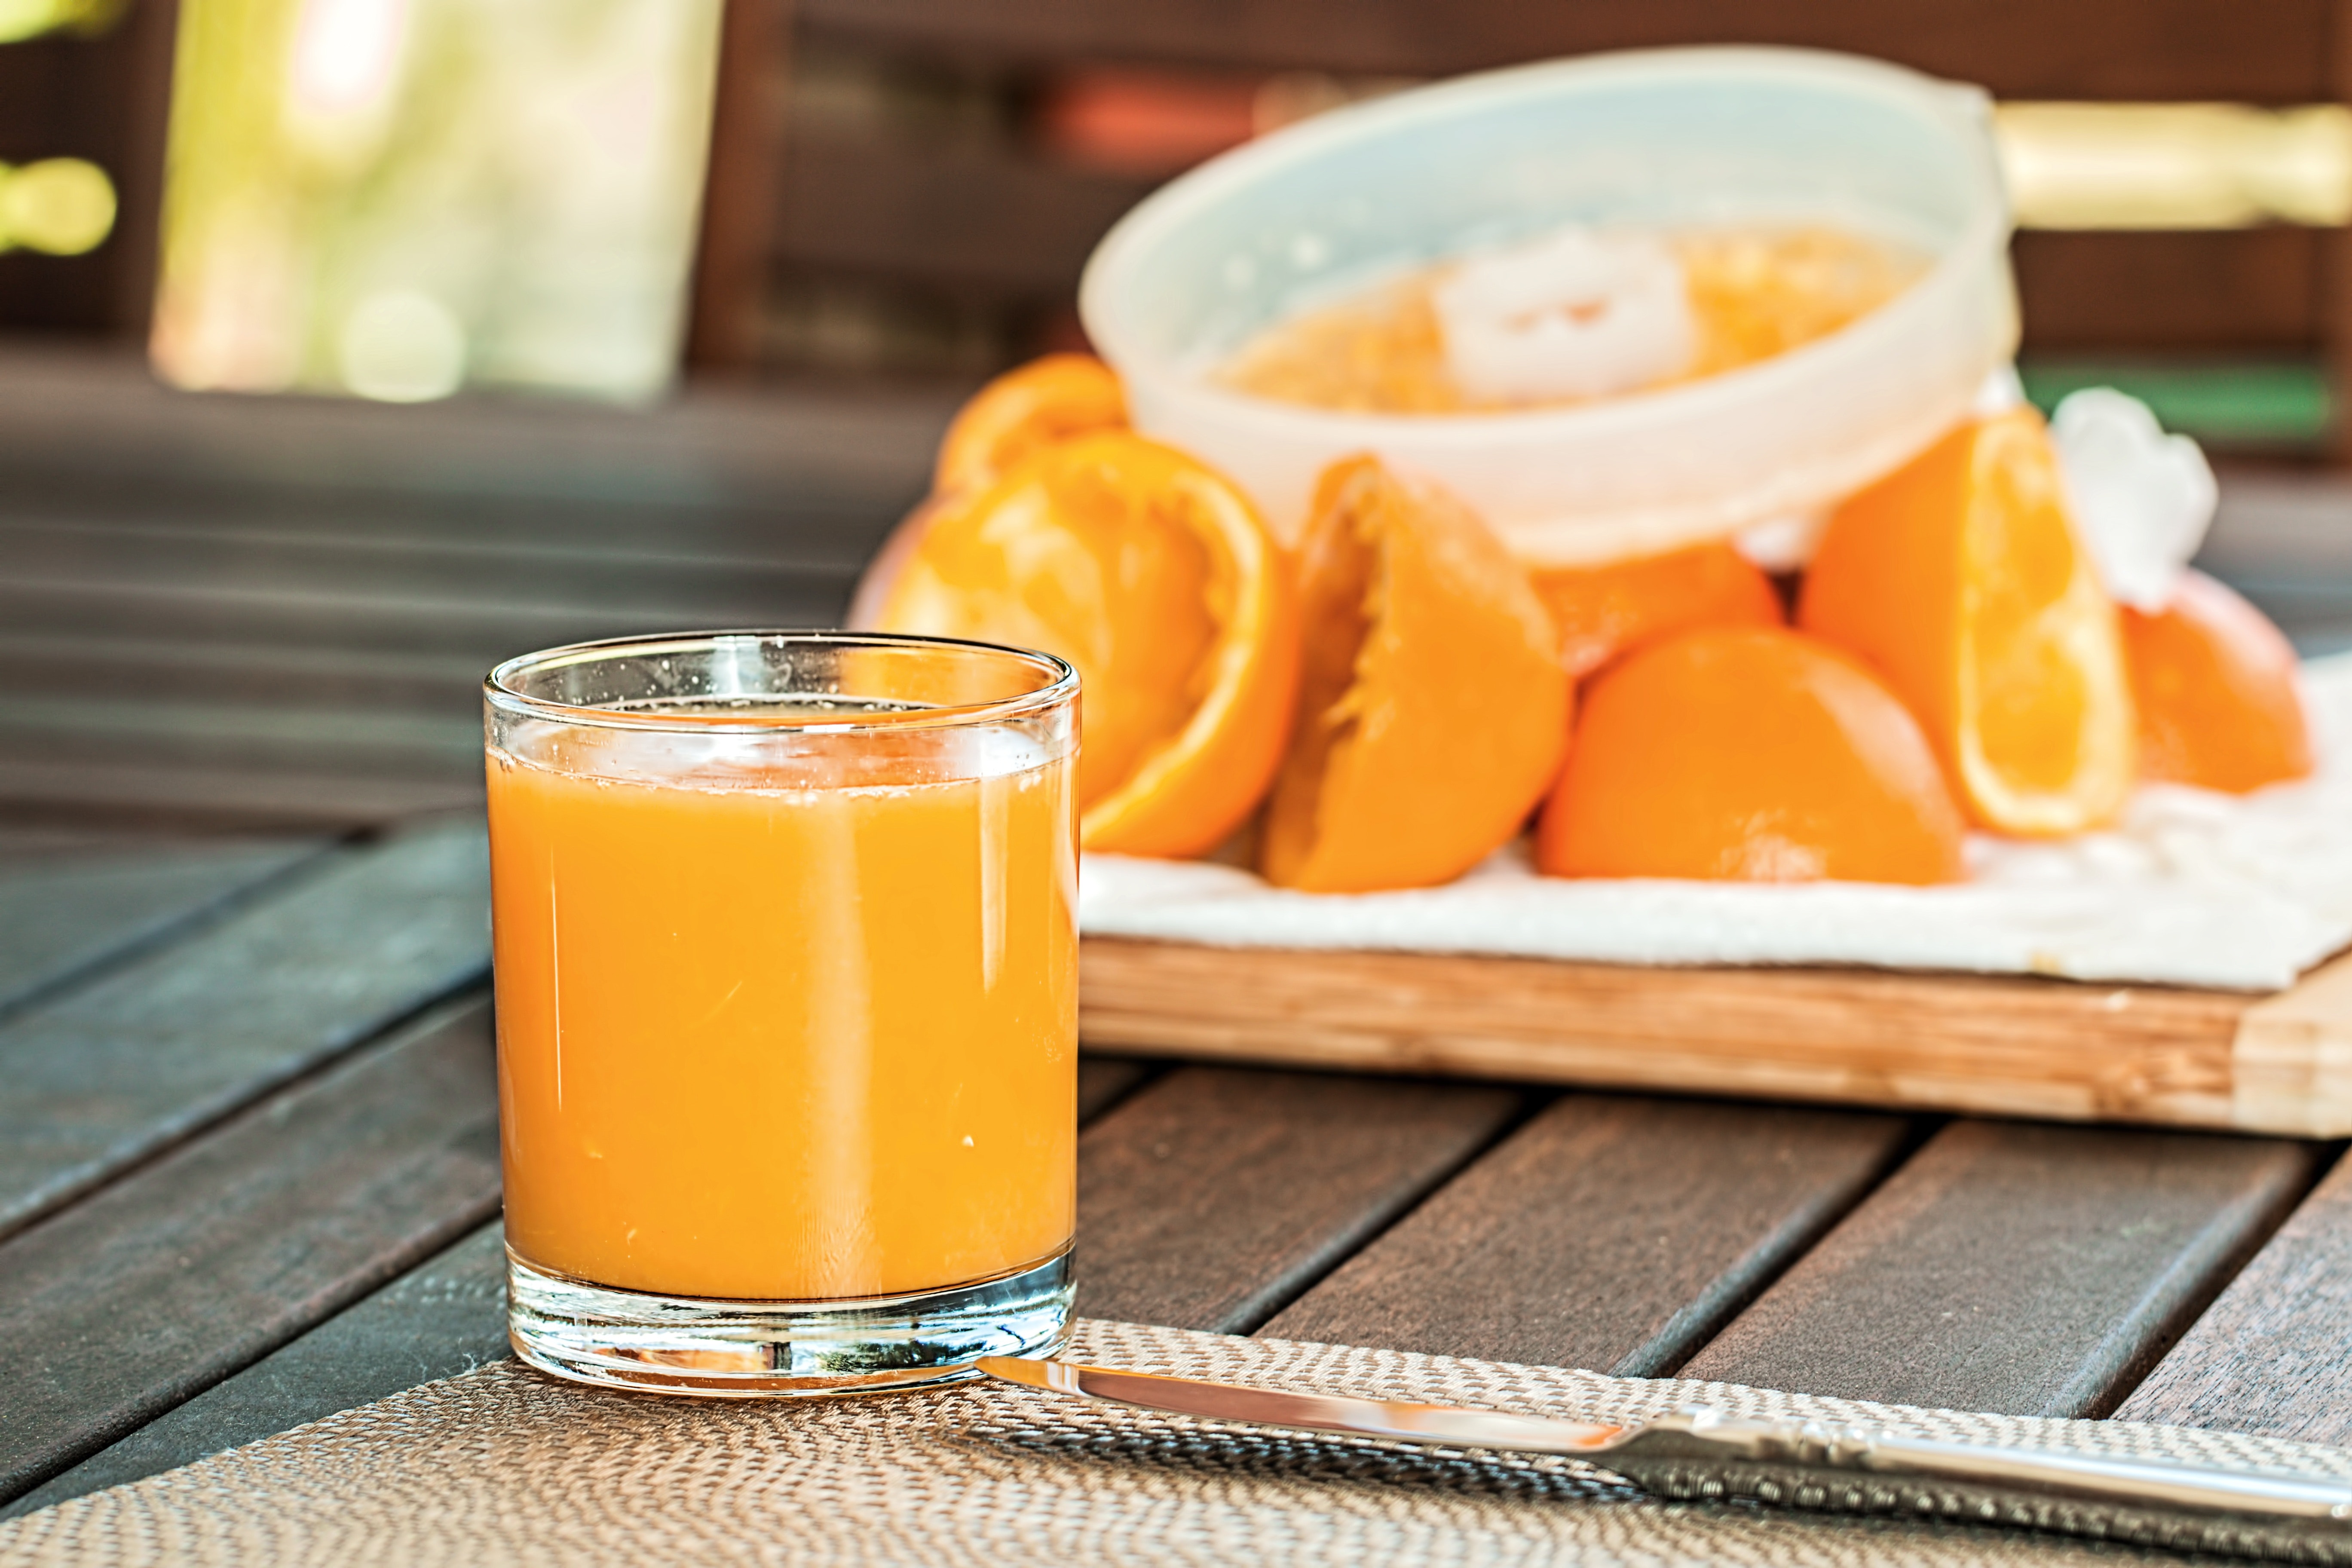 KREĆE SEZONA PREHLADA I GRIPA Ovo su mogući znaci da vašem tijelu nedostaje vitamin C